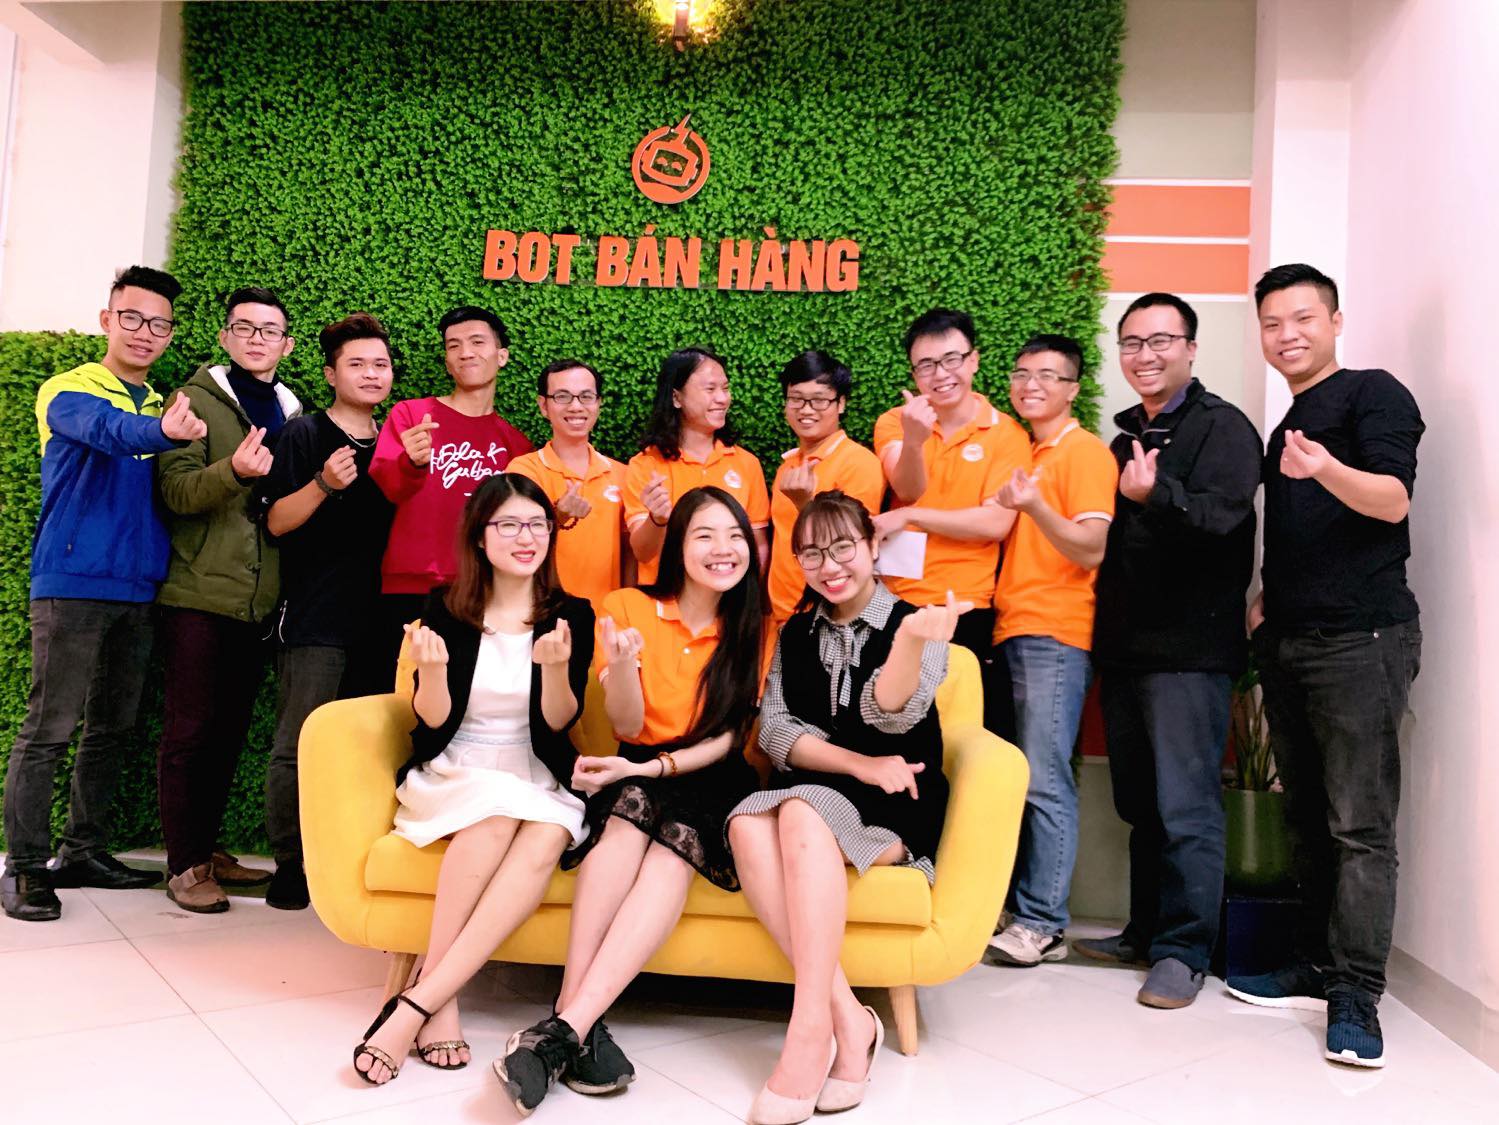 Công ty CP Công nghệ Chatbot Việt Nam (Bot Bán Hàng)